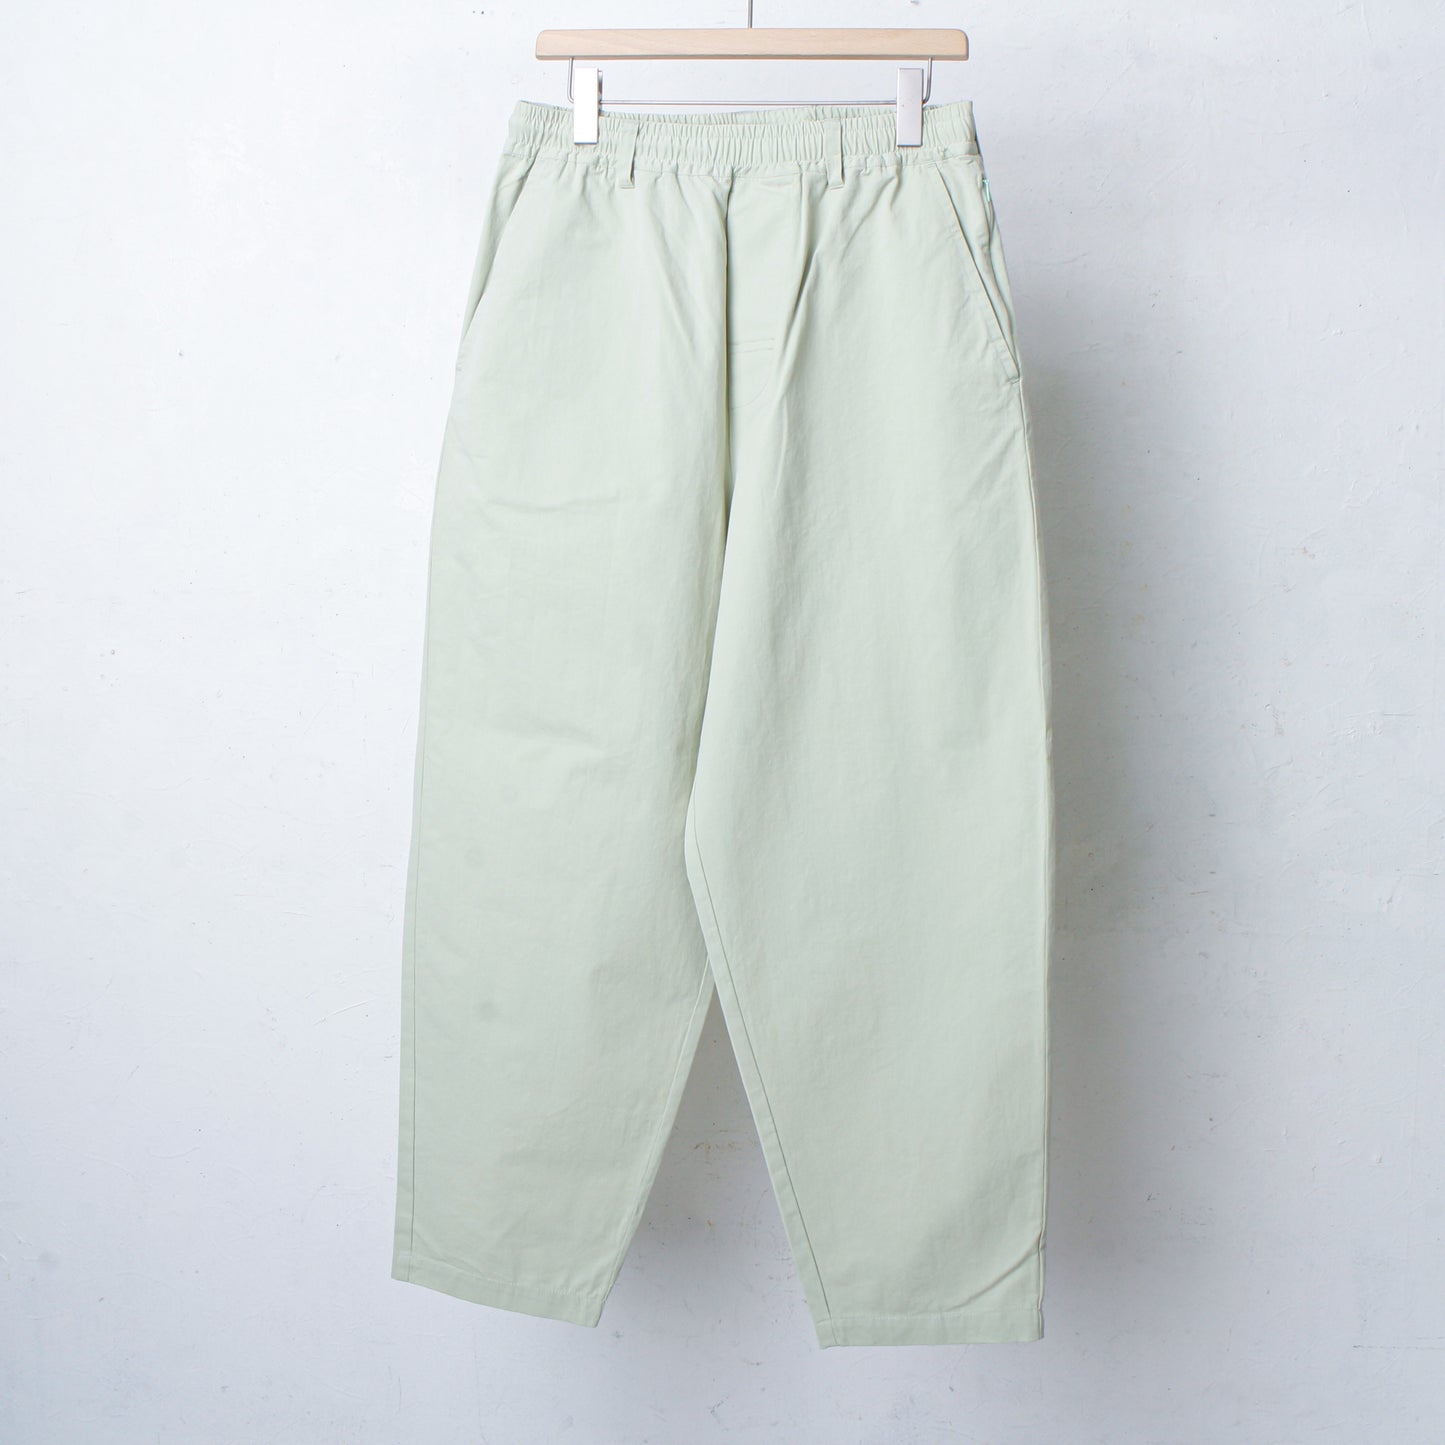 HAMBLETON PANTS /mint green